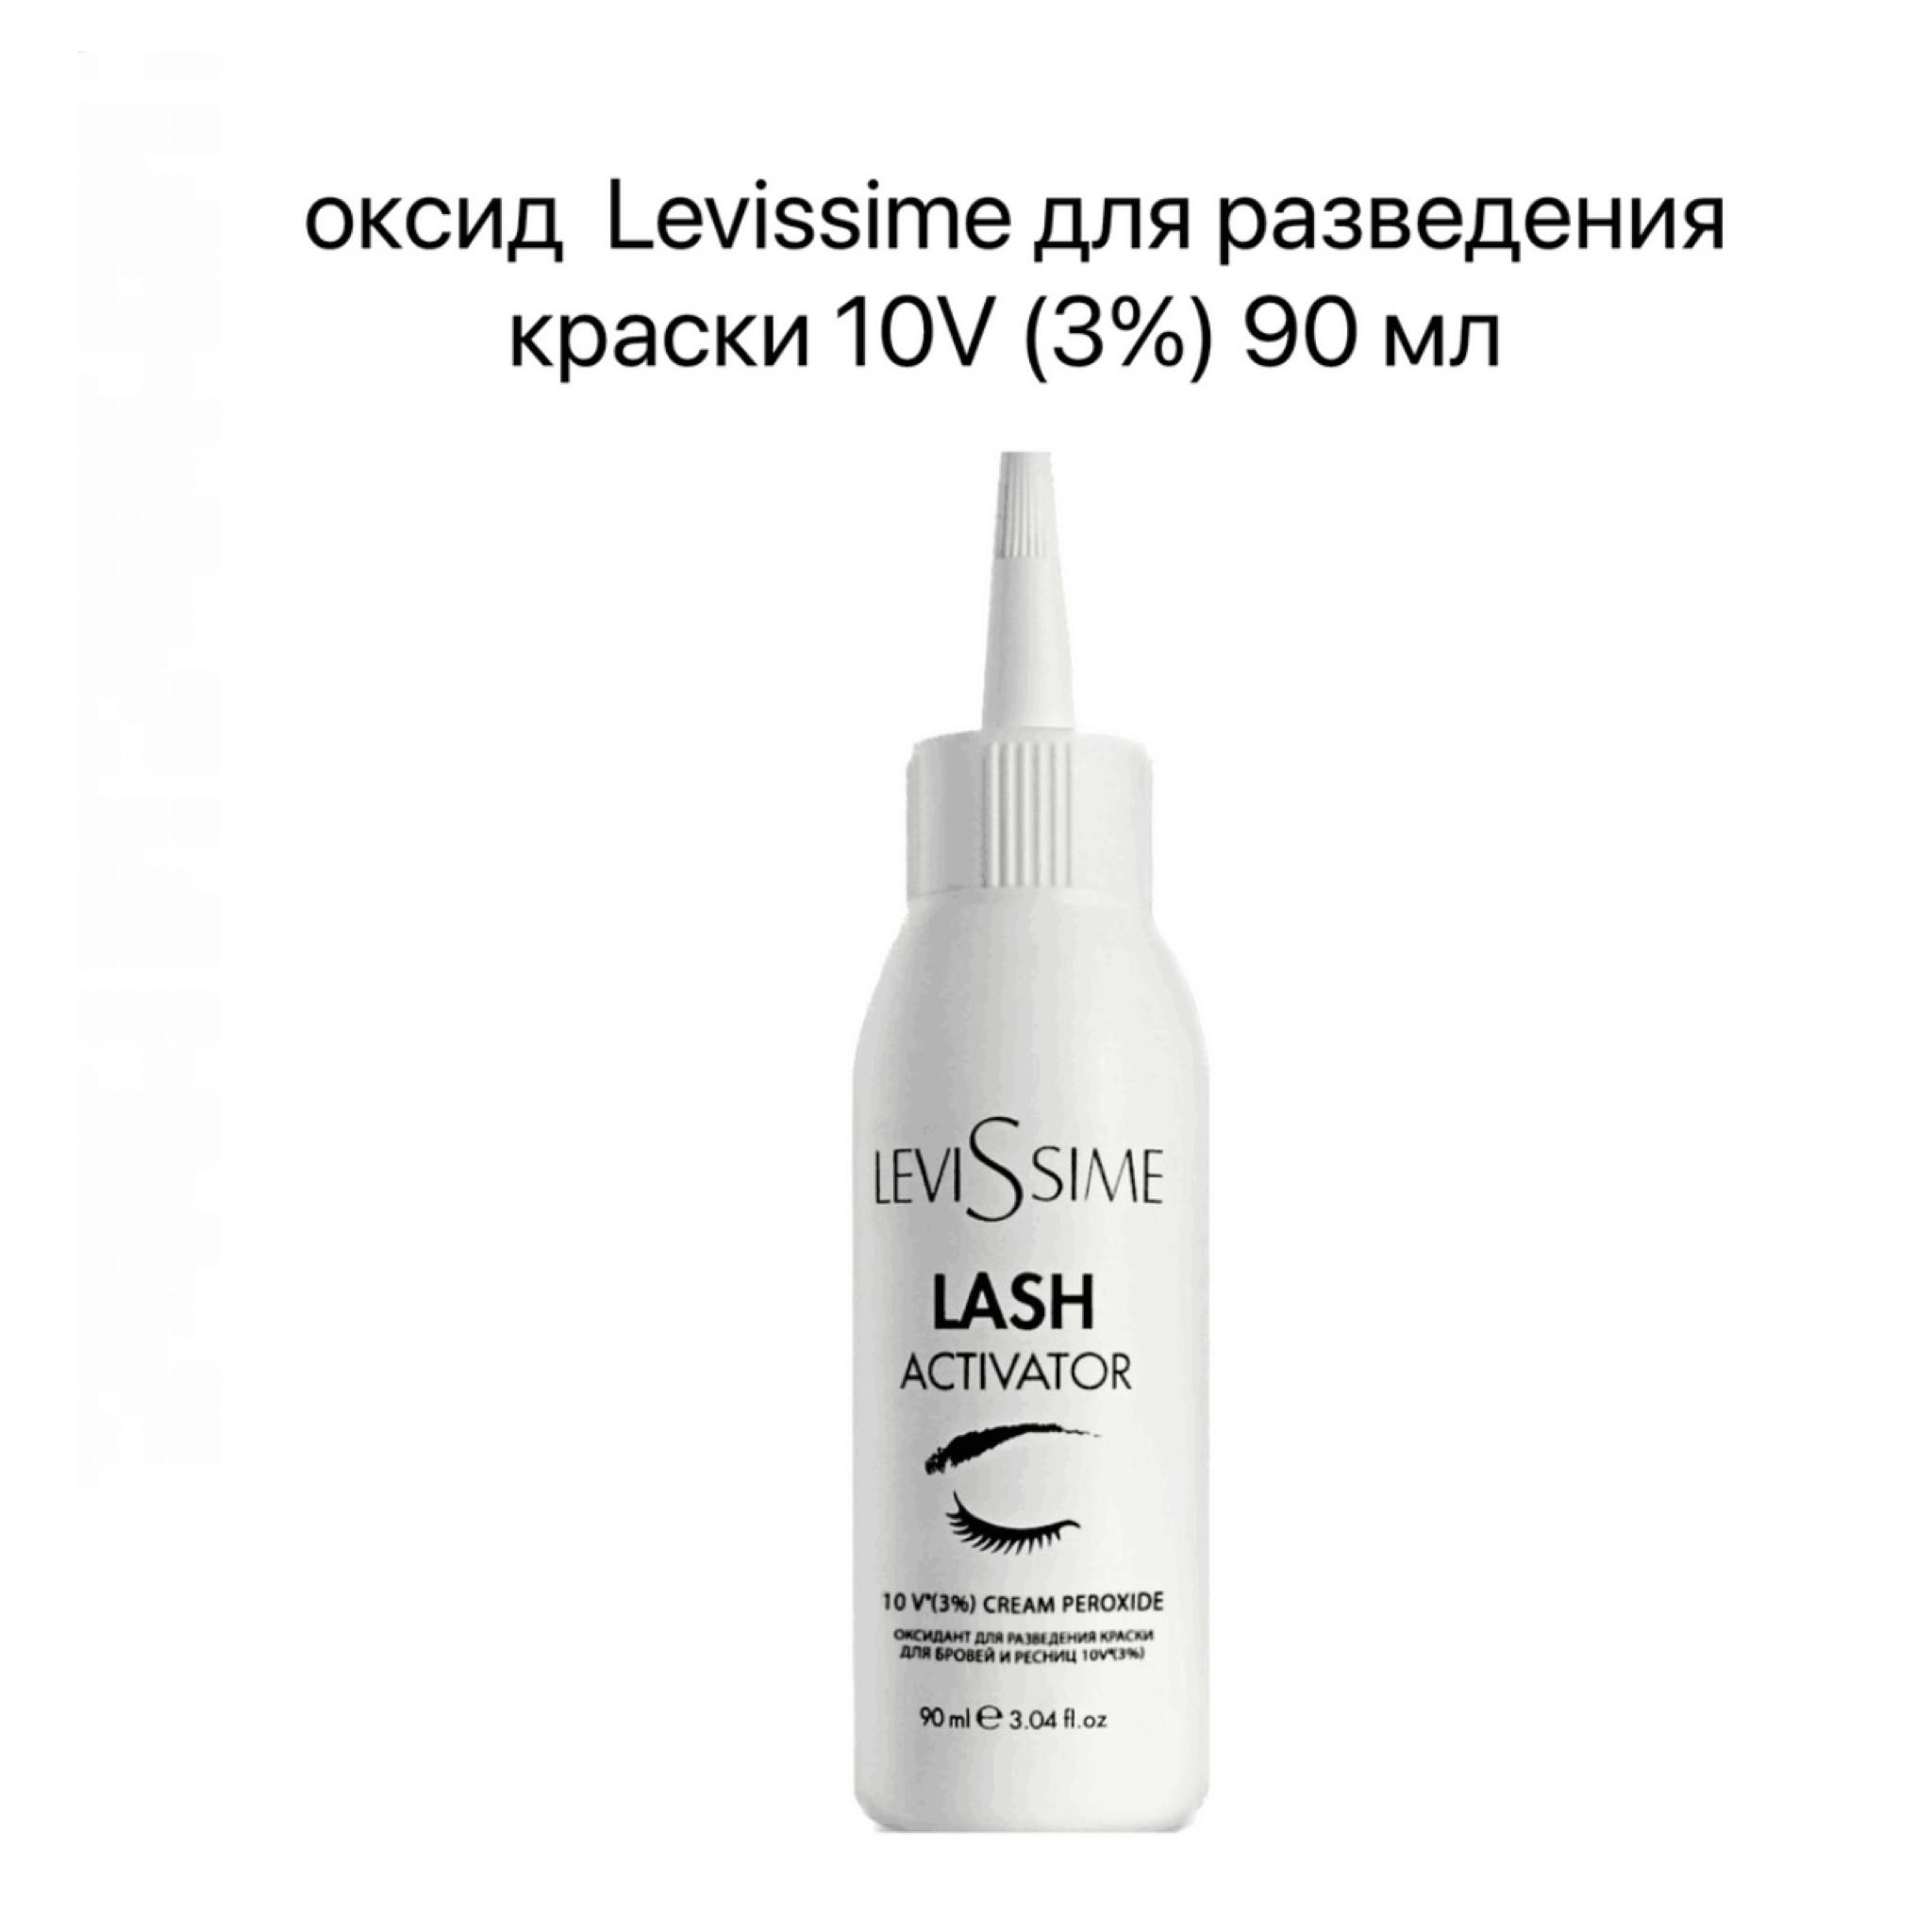 Оксидант для разведения краски для бровей и ресниц 10 V( 3%) 90 мл LEVISSIME